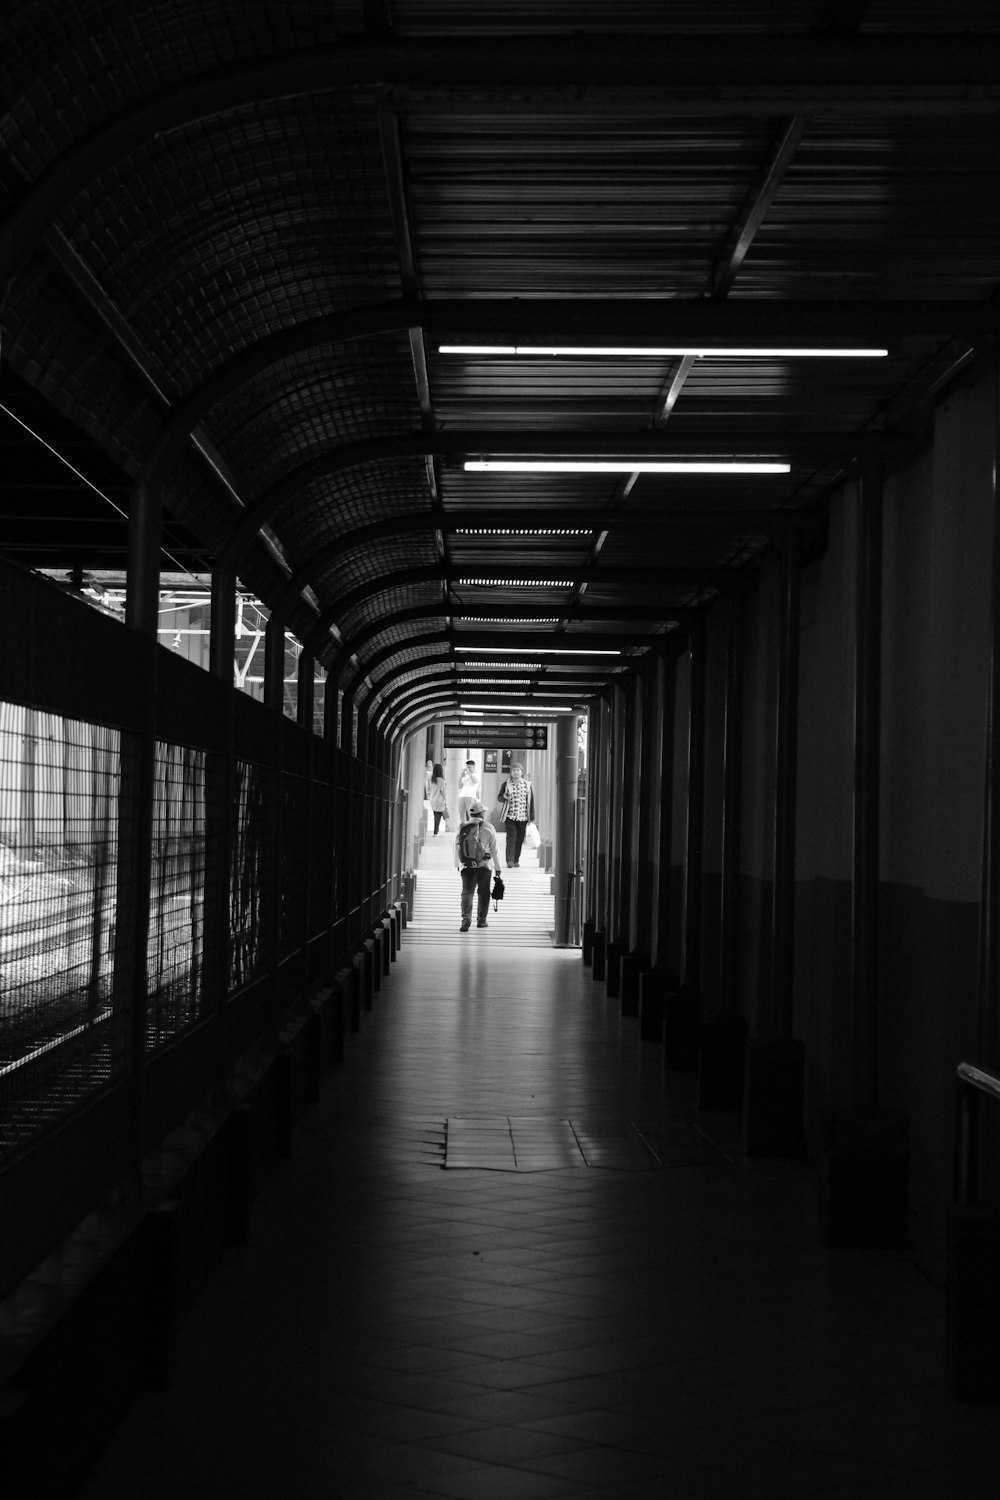 foto in scala di grigi di persone che camminano sul corridoio